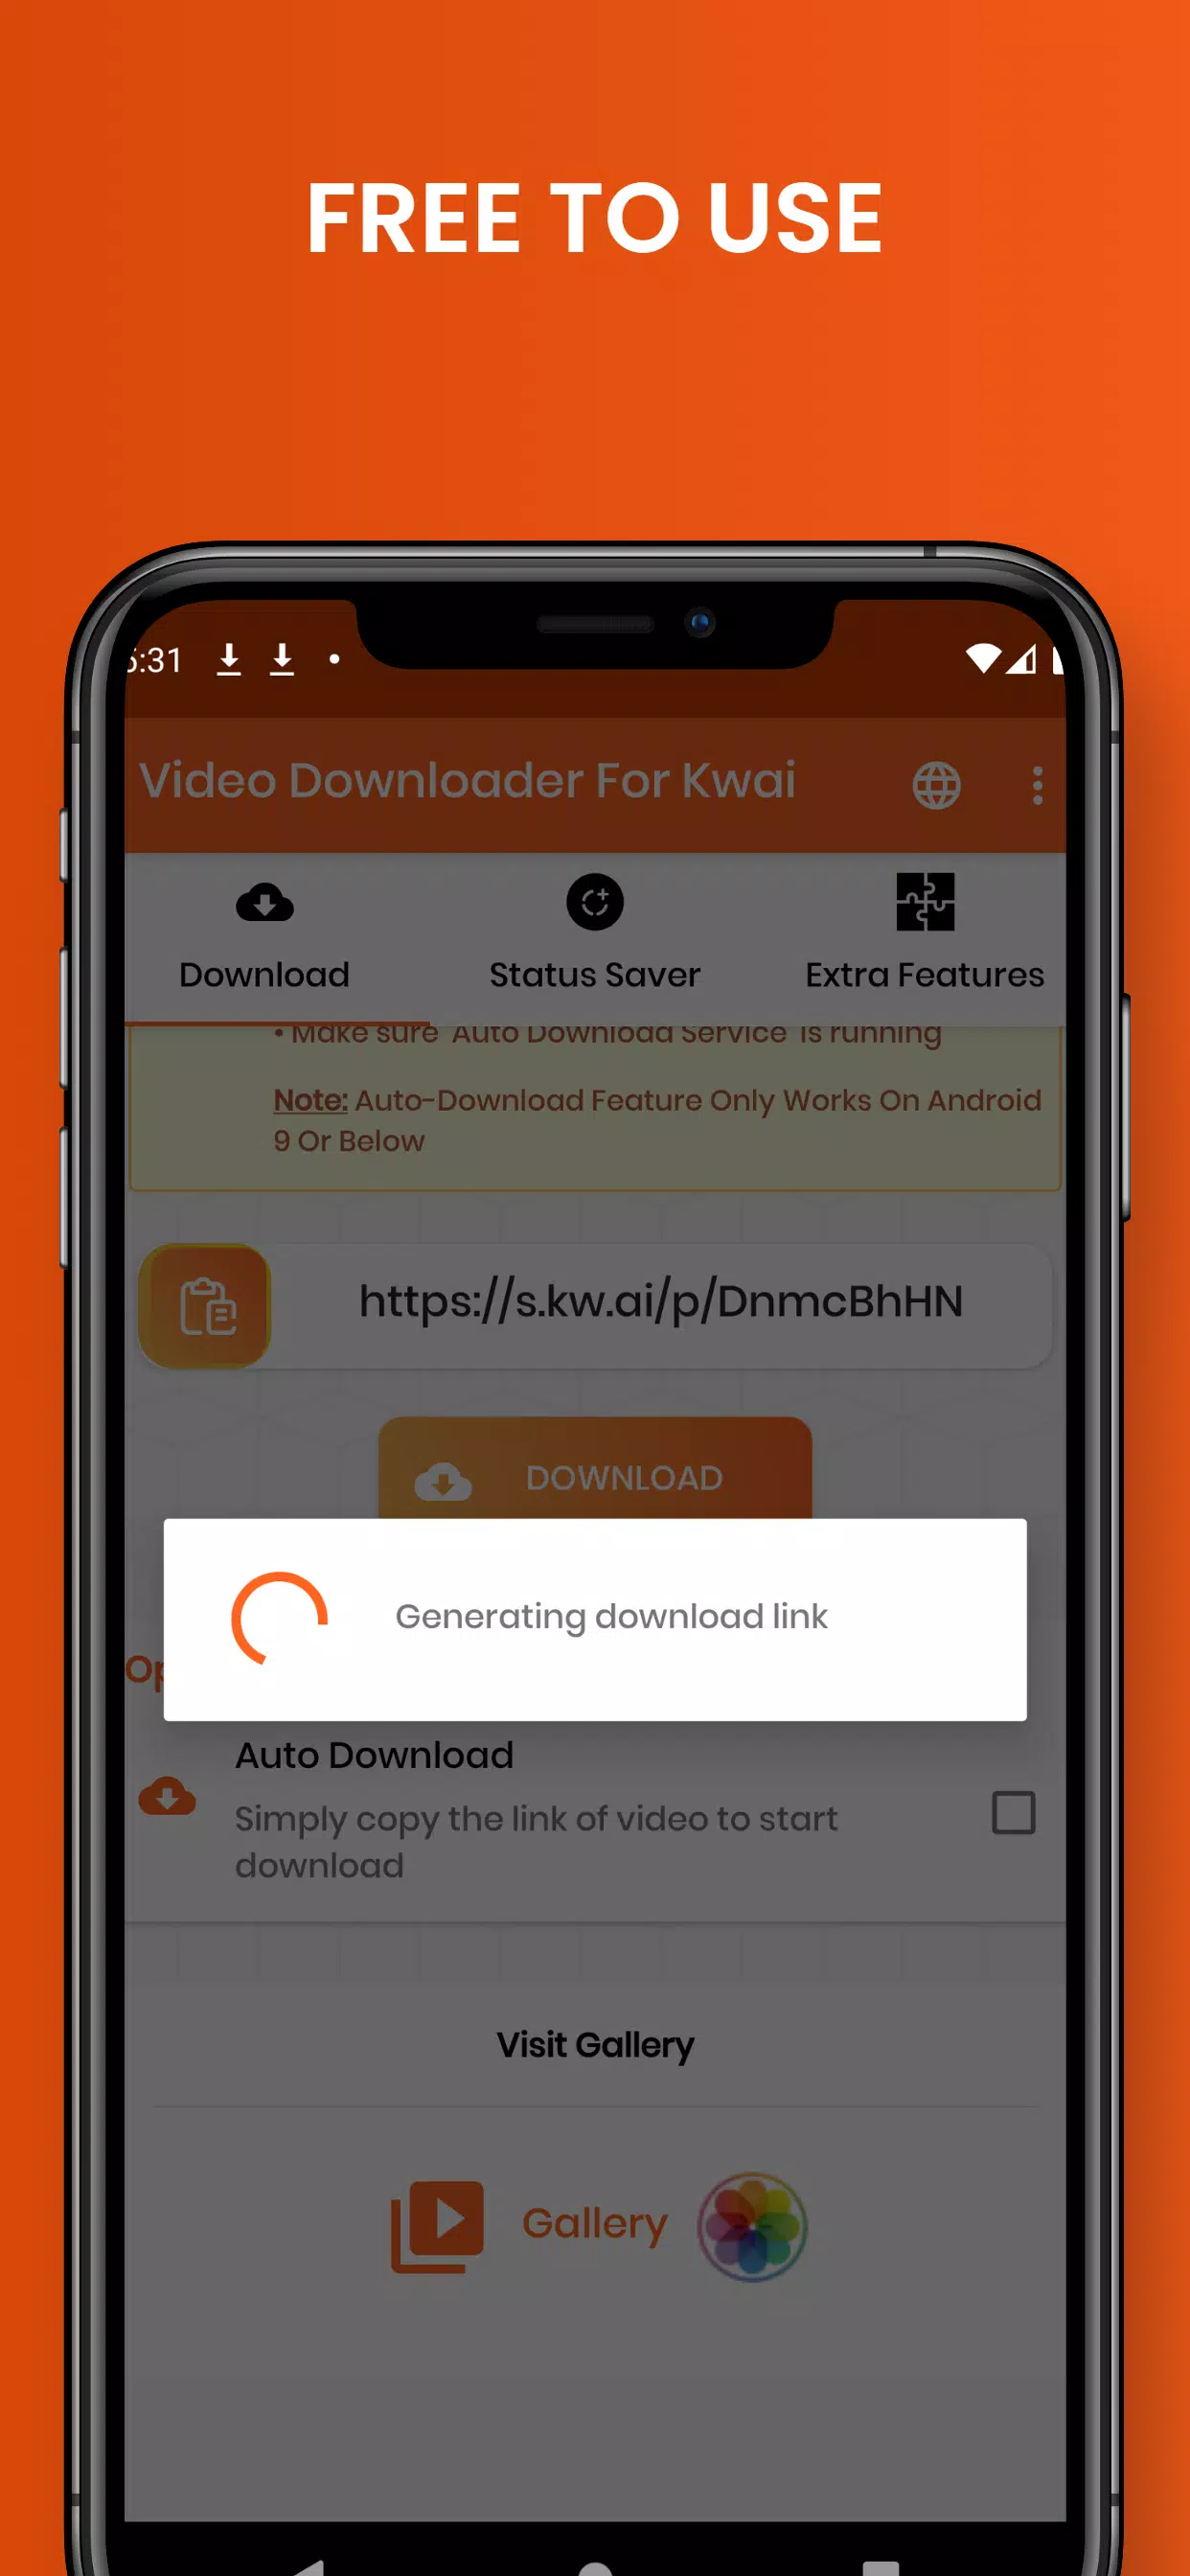 Kwai video downloader - Davapps